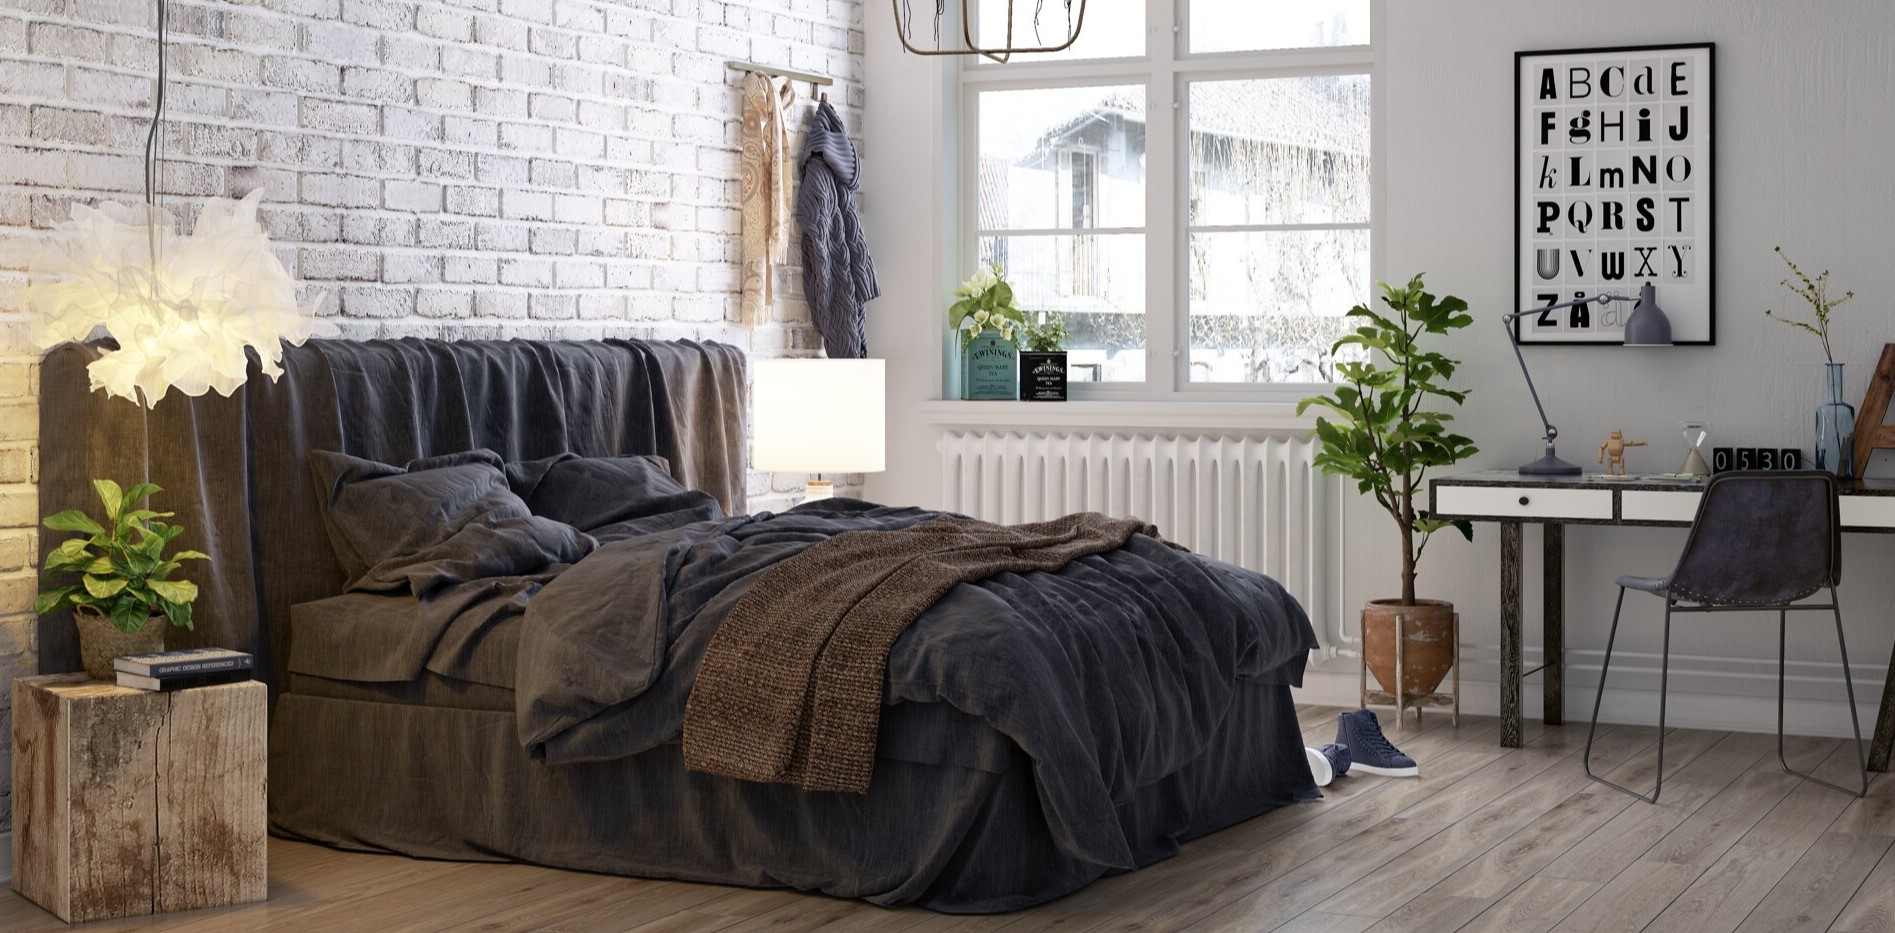 Темное постельное белье в интерьере светлой скандинавской спальни